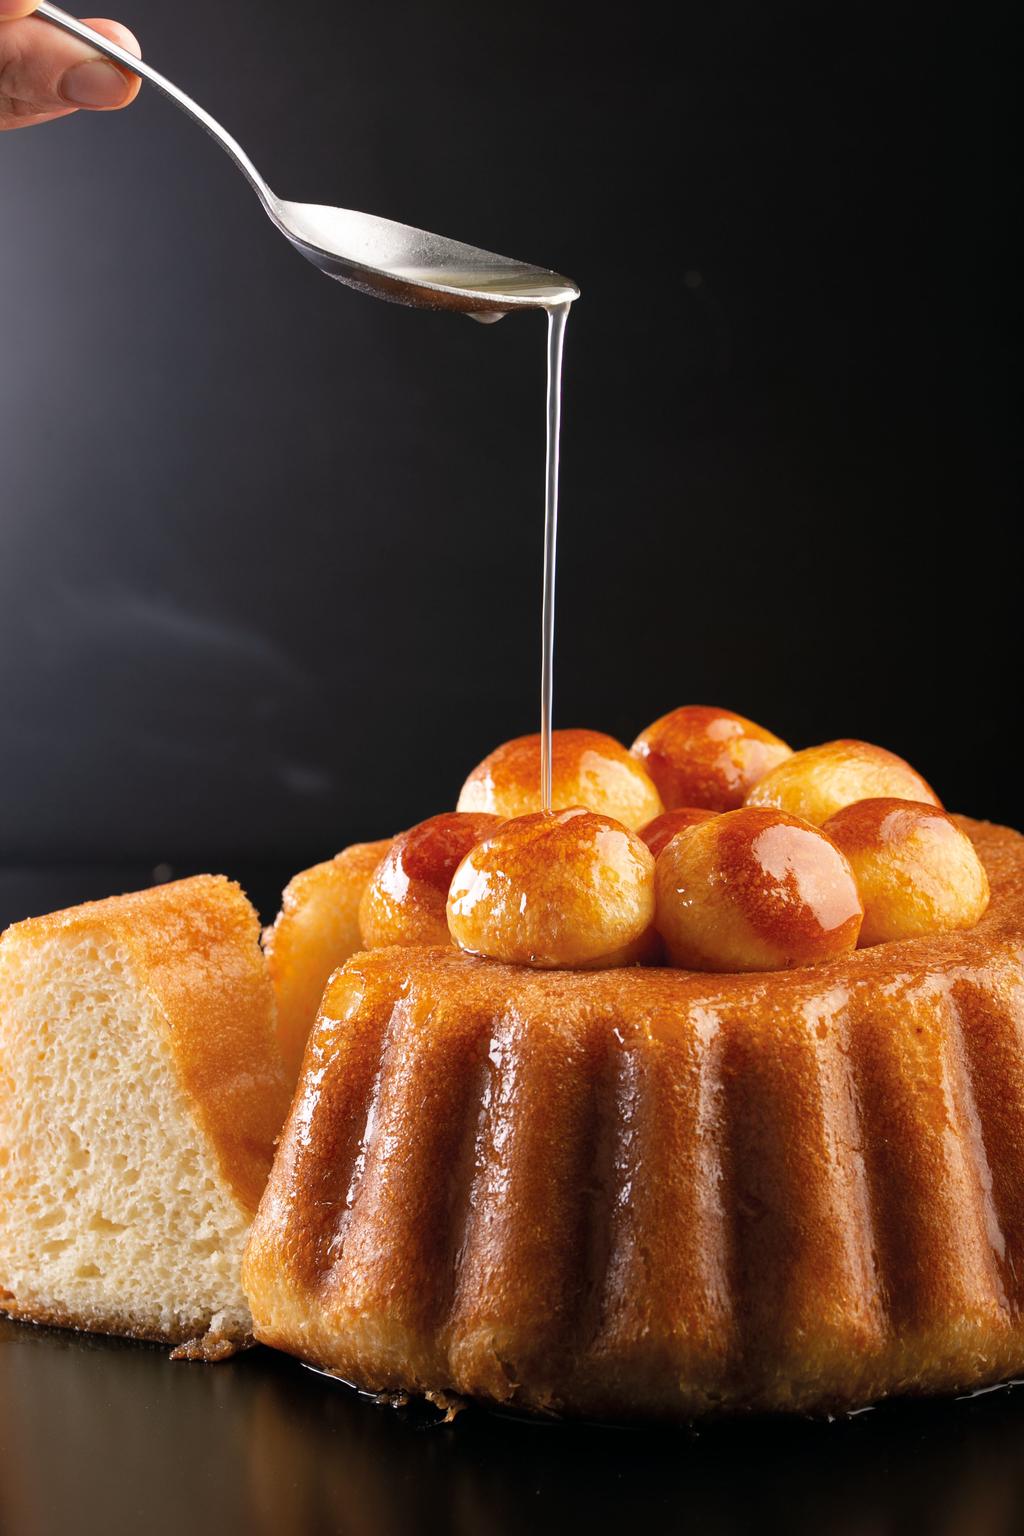 nocciole raffinate, una delicatissima crema di ricotta insaporita da cubetti di pere caramellate, ricoperta di zucchero a velo.